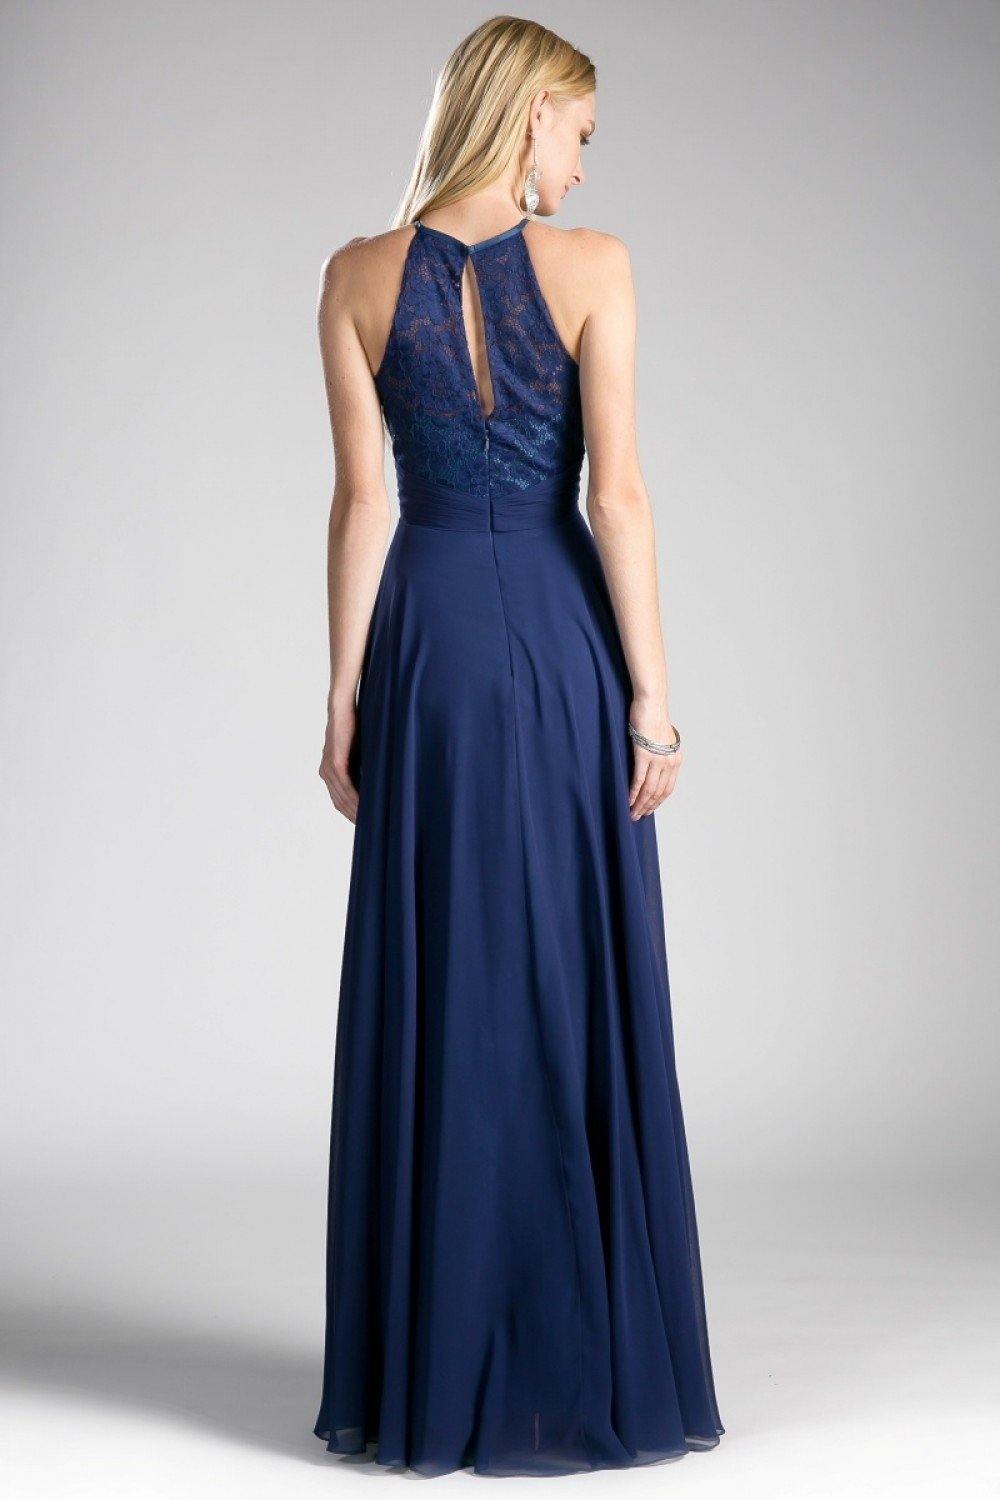 Long Formal Dress Halter Bridesmaid - The Dress Outlet Cinderella Divine